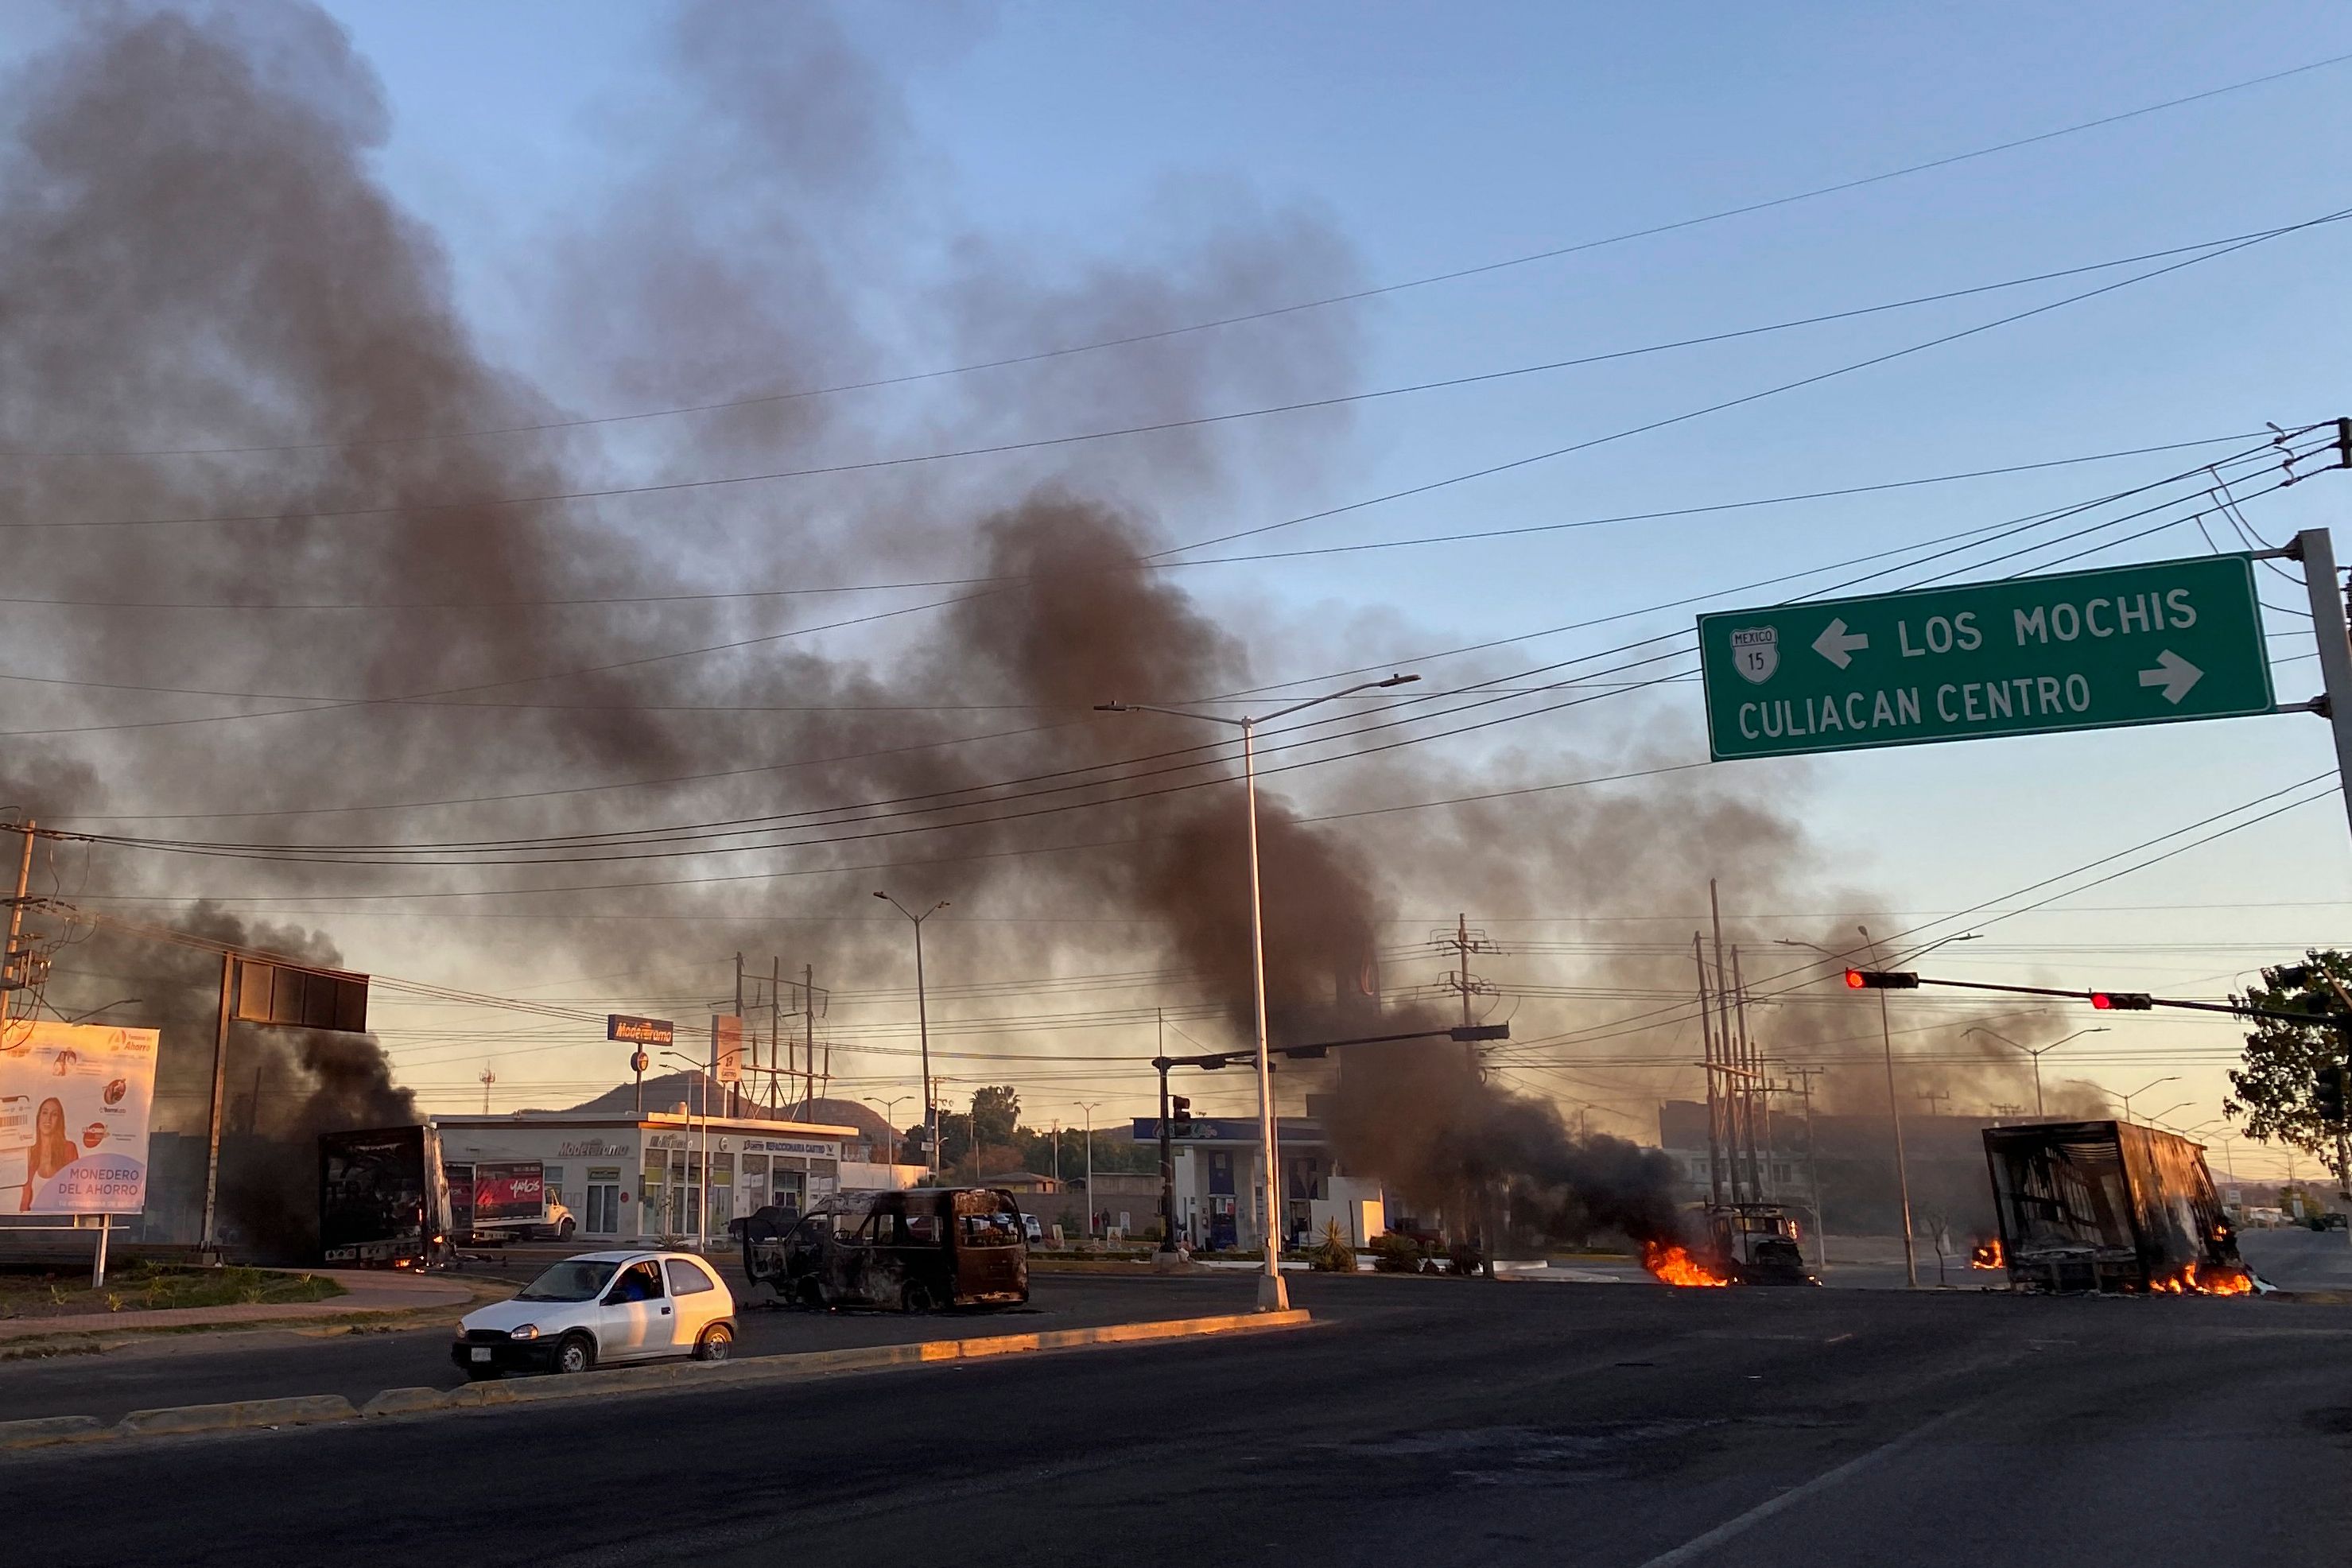 Vehículos en llamas en Culiacán, Sinaloa, luego de la captura de Ovidio Guzmán, hijo de el Chapo Guzmán. (Foto Prensa Libre: AFP)